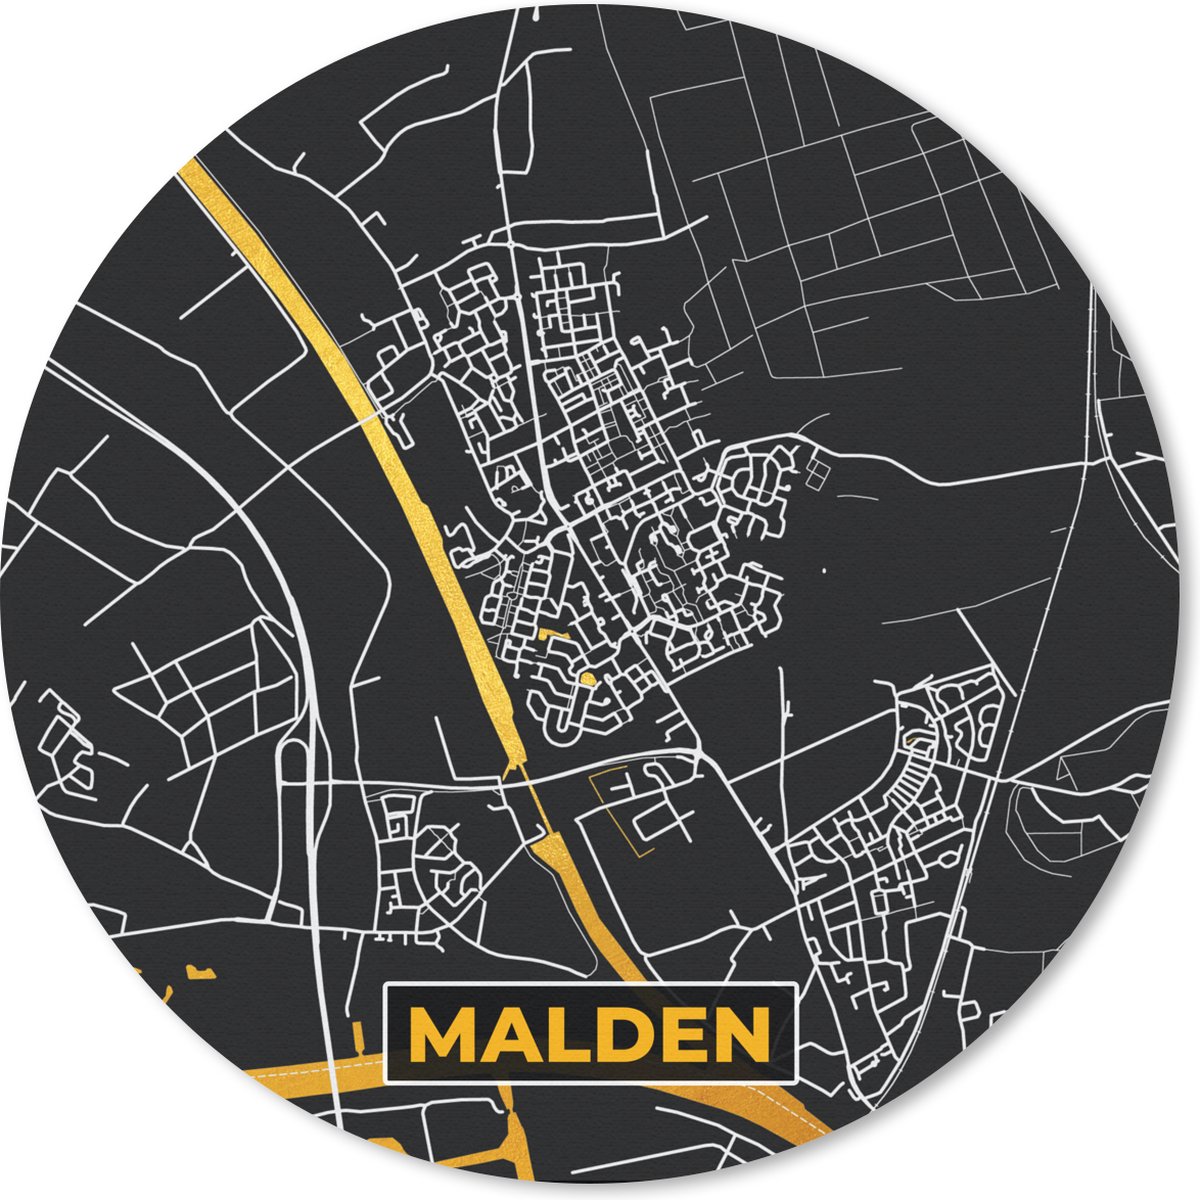 Muismat - Mousepad - Rond - Malden - Plattegrond - Stadskaart - Kaart - Nederland - Goud - 40x40 cm - Ronde muismat